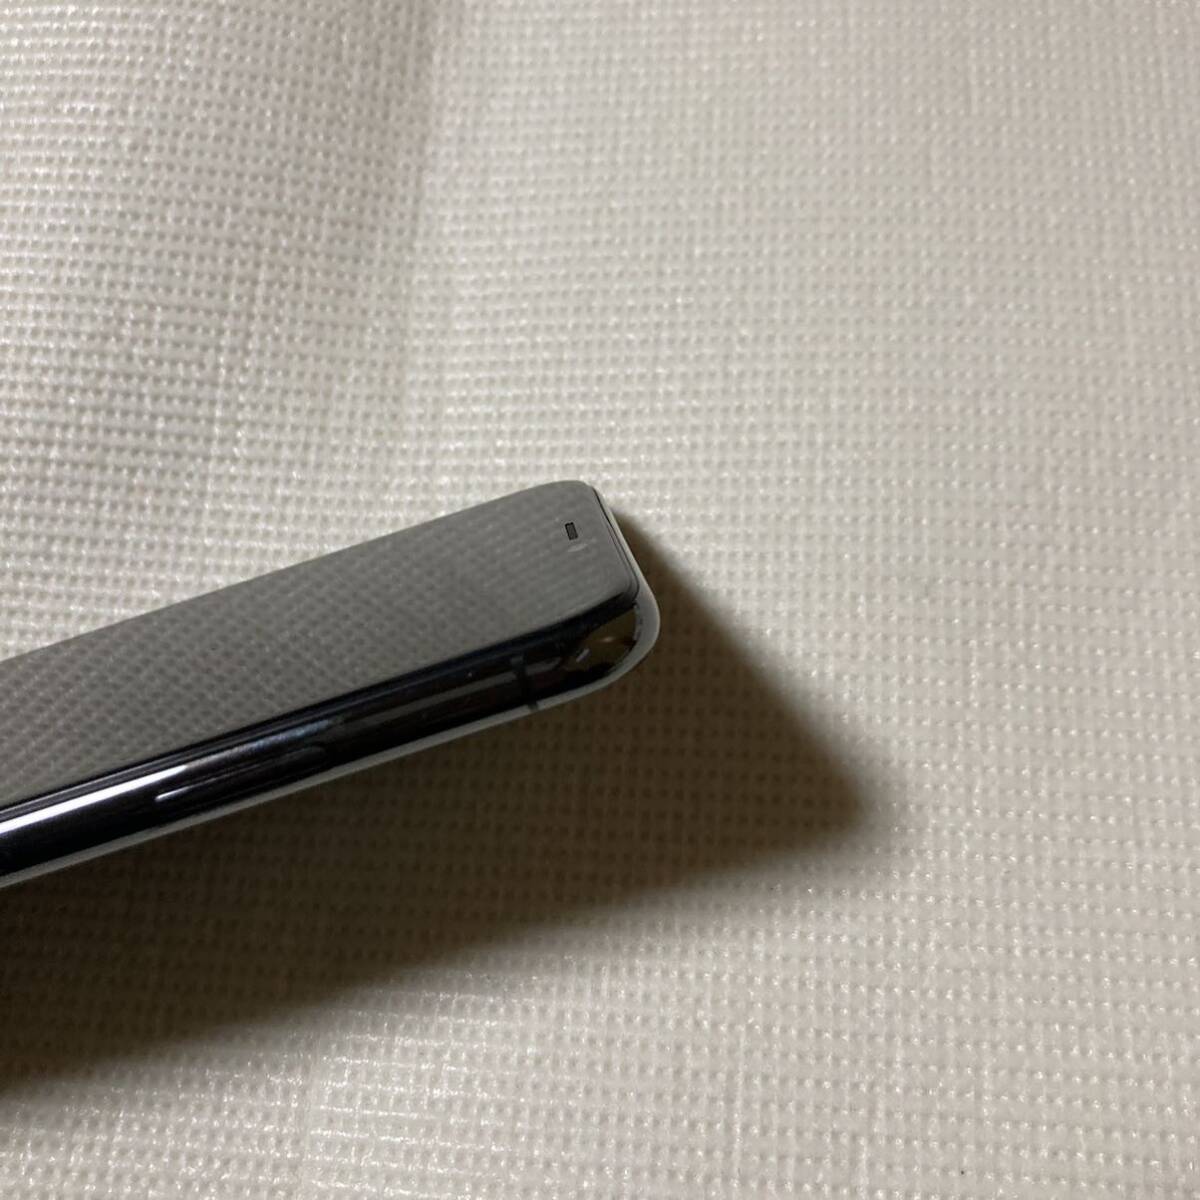 送料無料 超美品 SIMフリー iPhoneX 256GB スペースグレー バッテリー最大容量100% SIMロック解除済 付属品の画像5